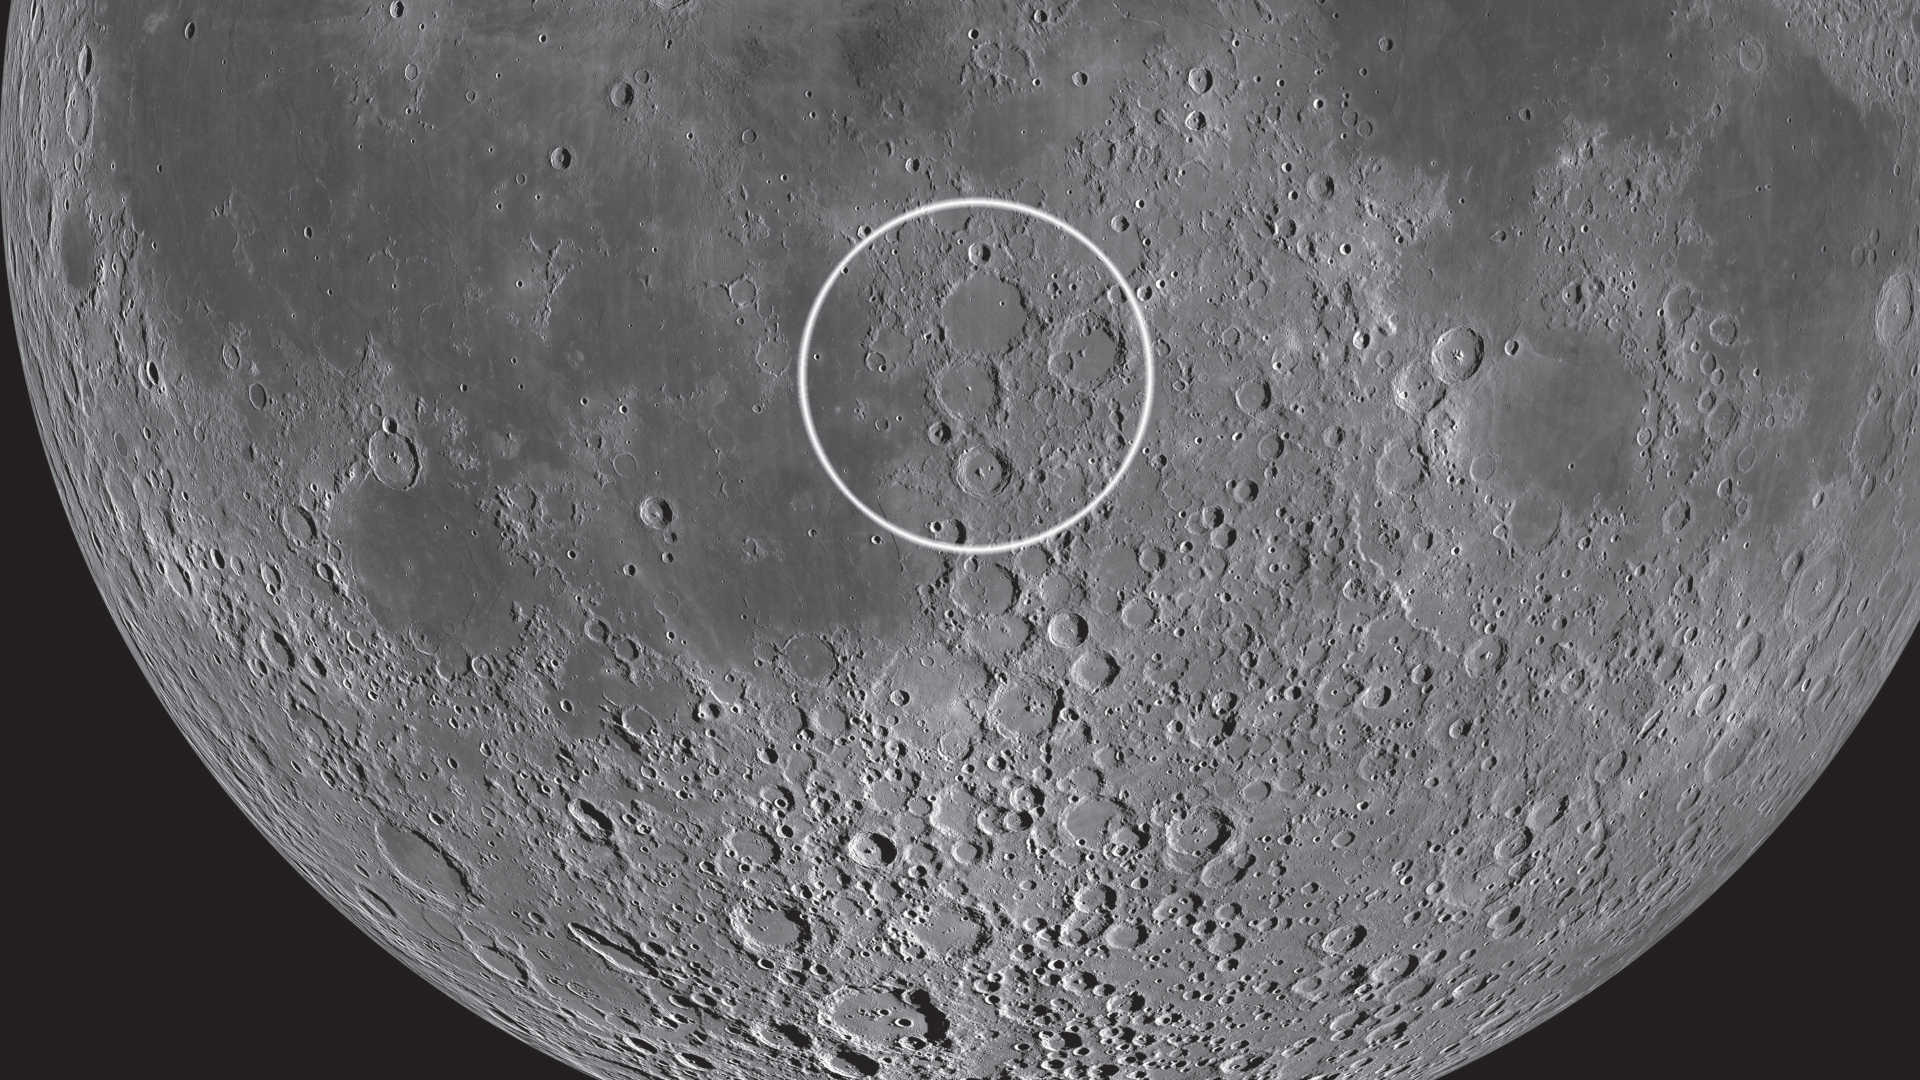 Trioul de cratere se găsește aproape în centrul Lunii. NASA/GSFC/Arizona State University